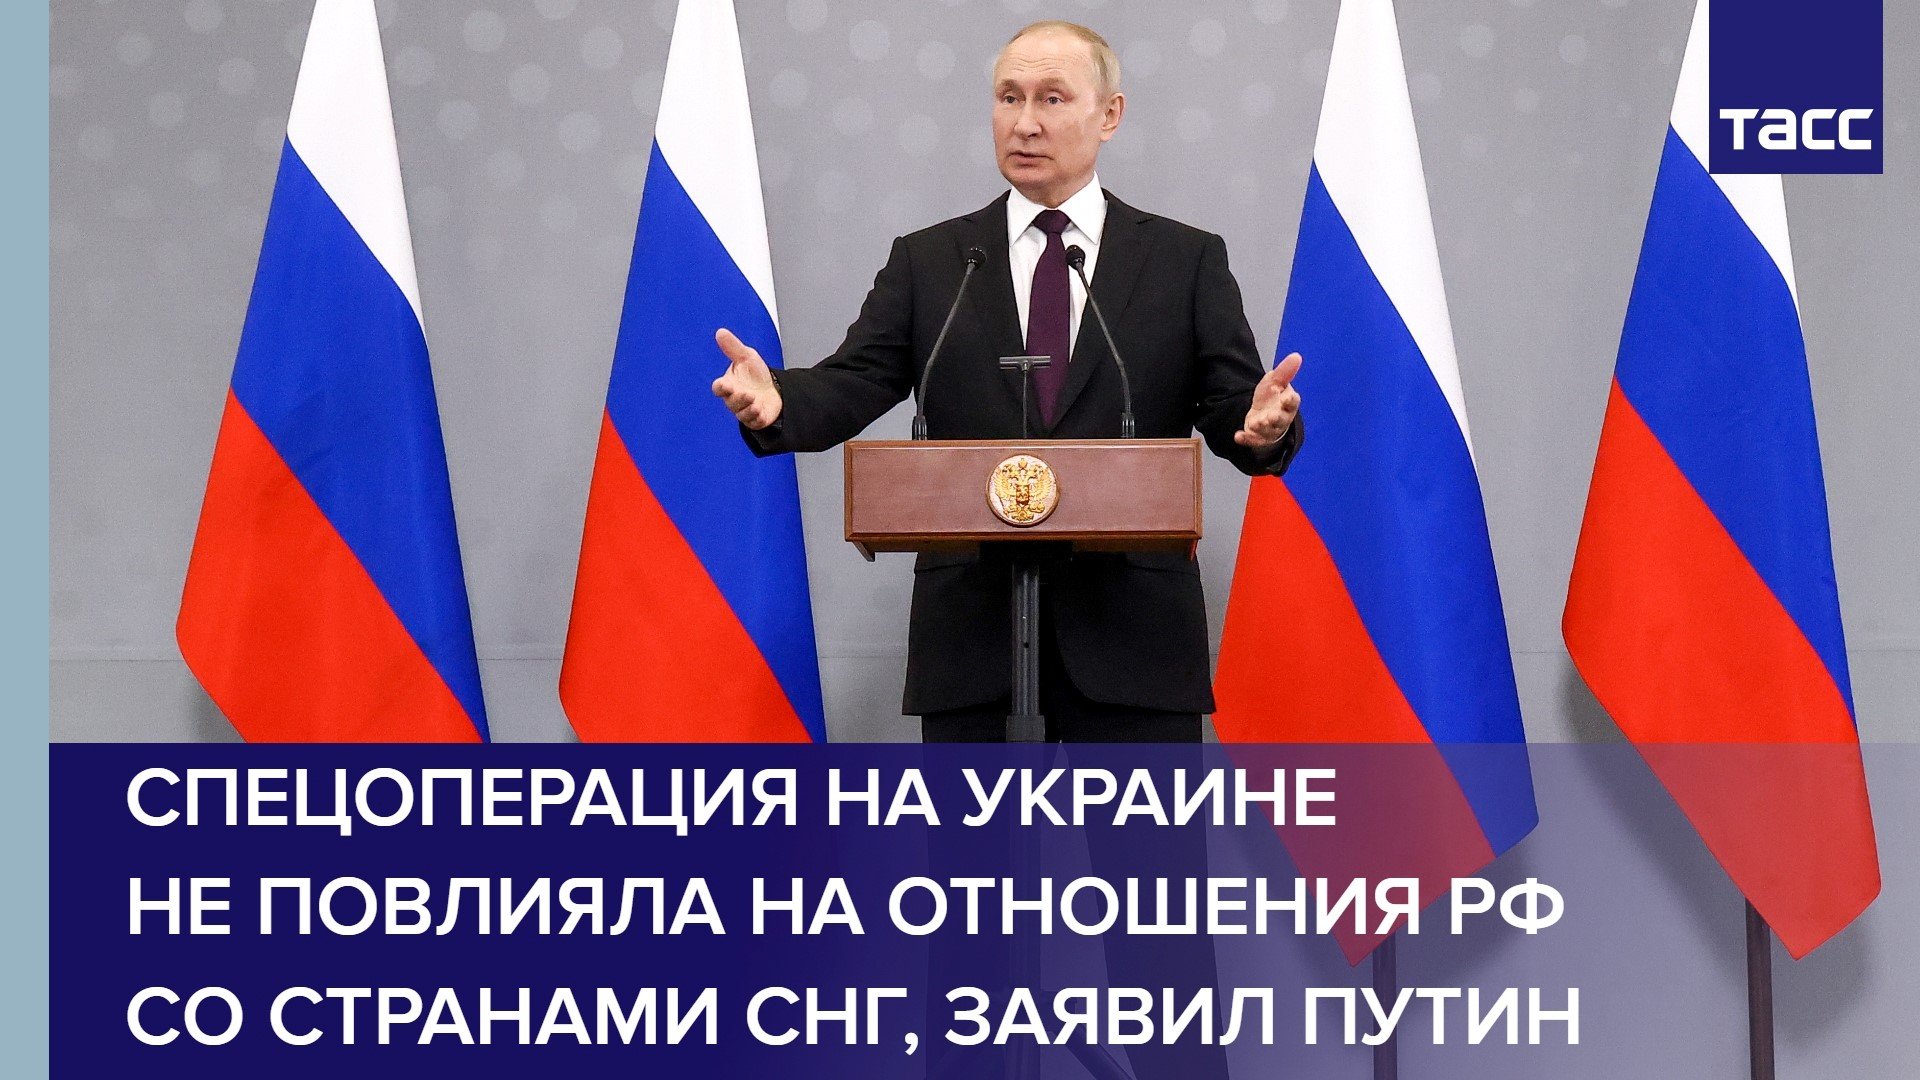 Спецоперация на Украине не повлияла на отношения РФ со странами СНГ, заявил Путин